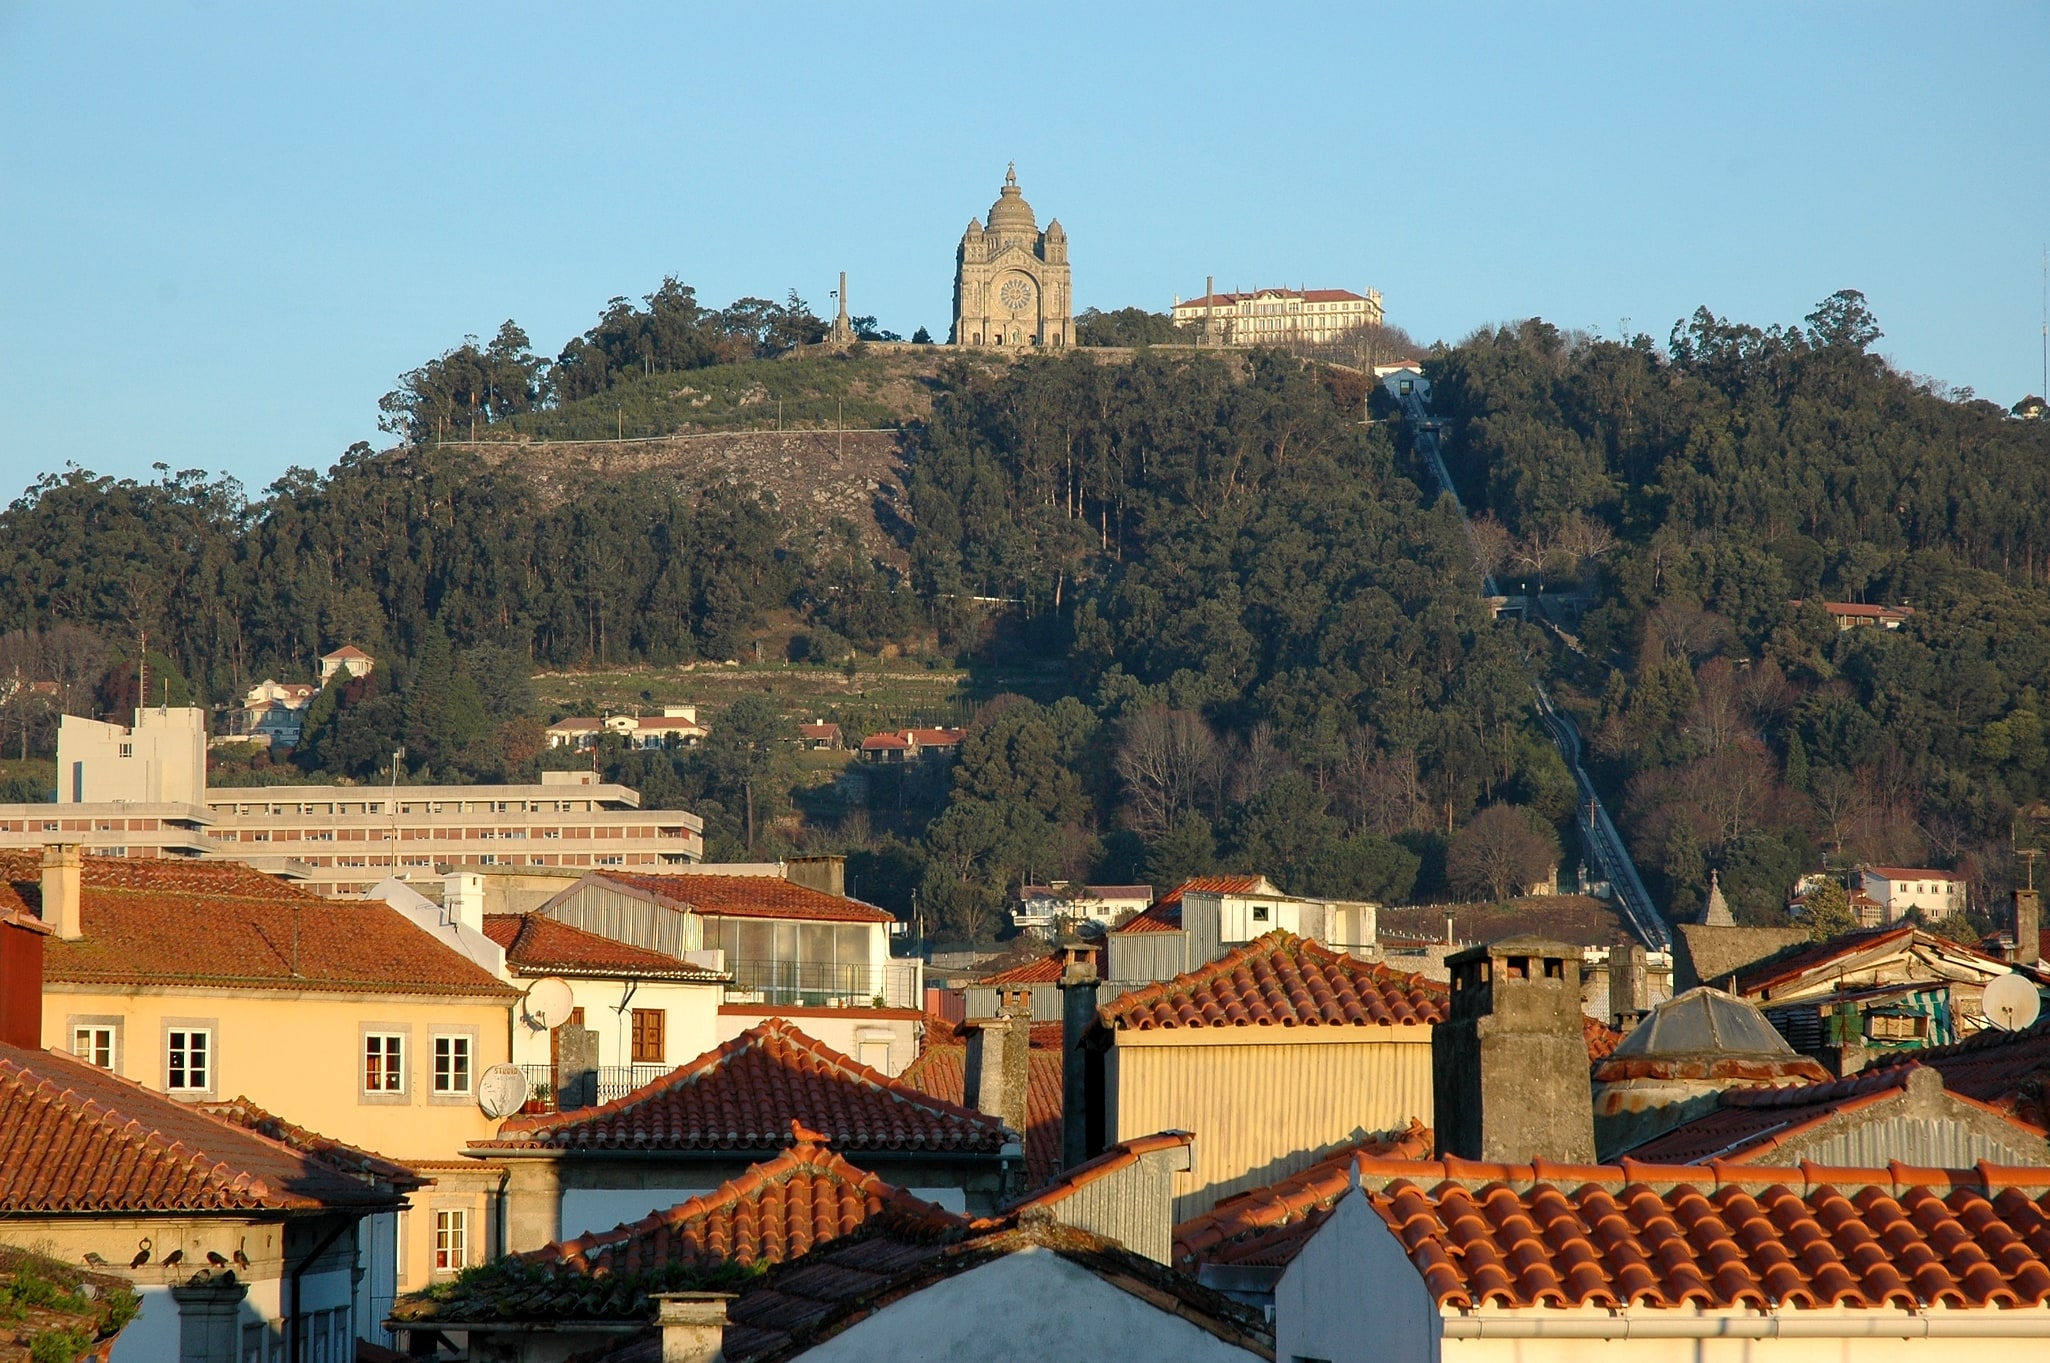 Viana do Castelo, Portugal